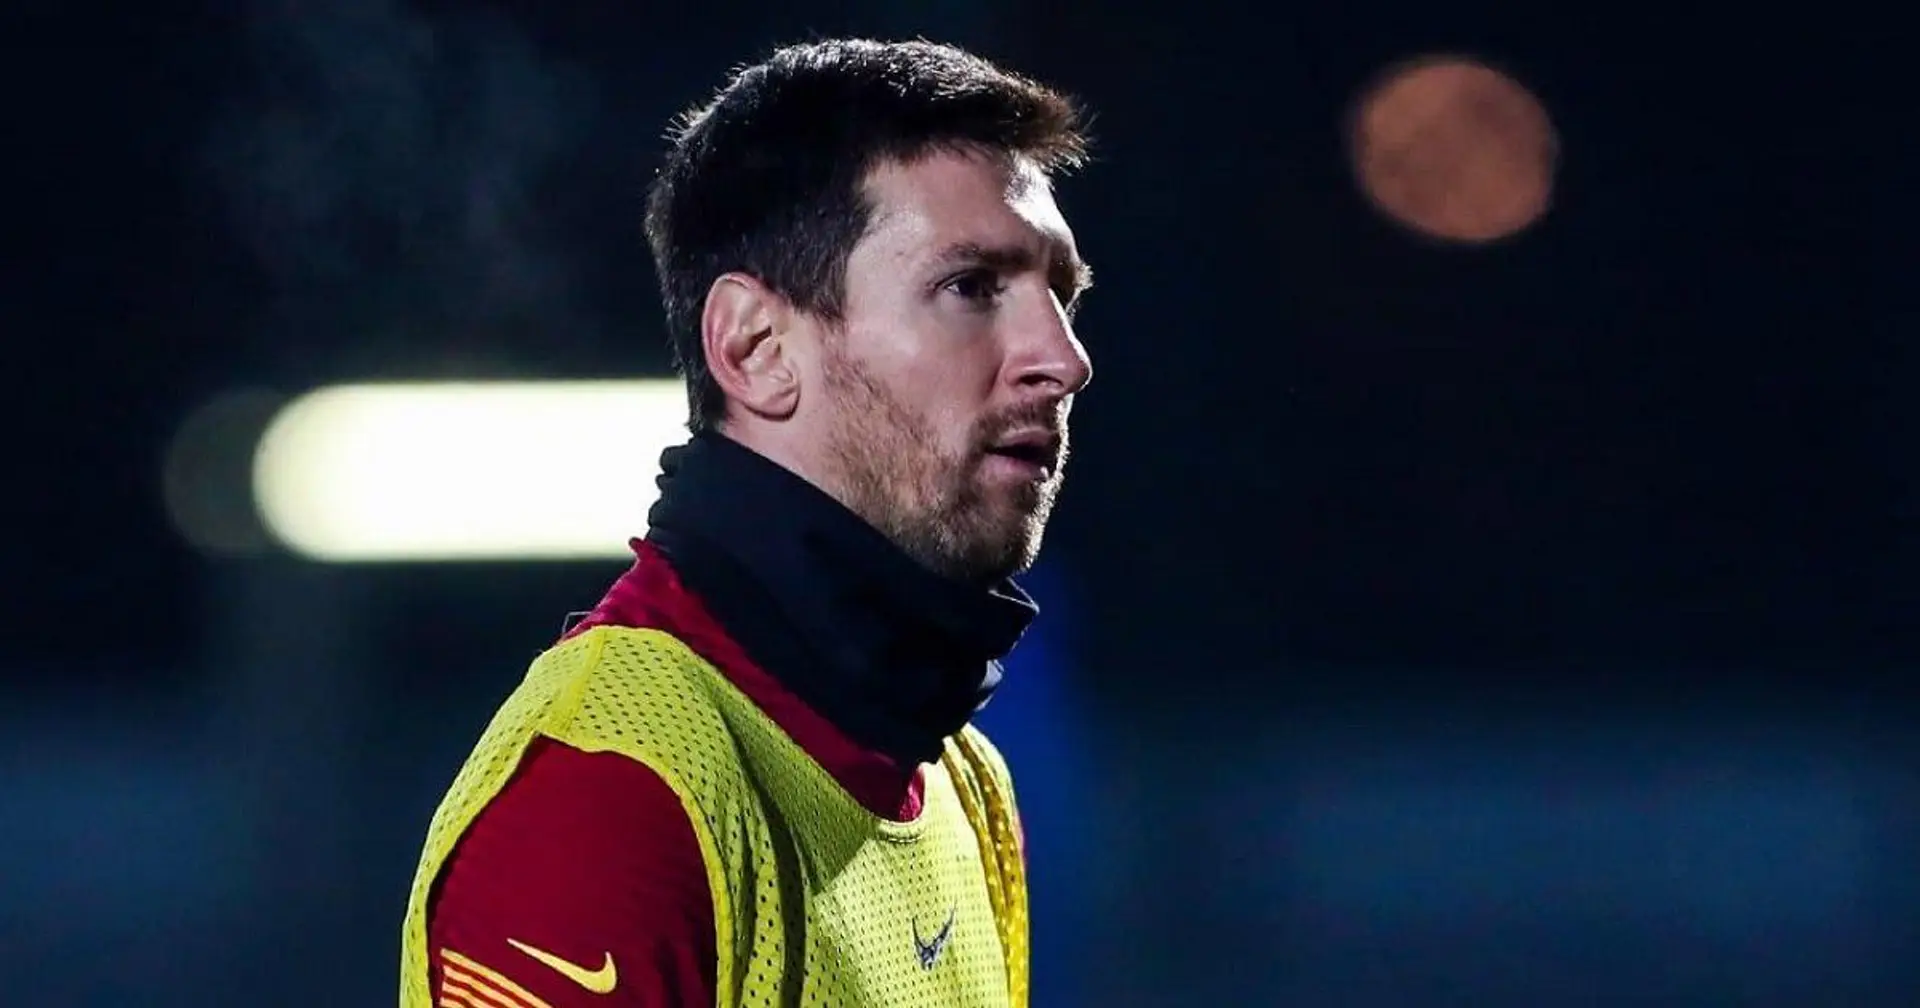 Toujours ce petit quelque chose en plus: Leo Messi domine le classement des joueurs avec le plus de dribbles réussis en Europe